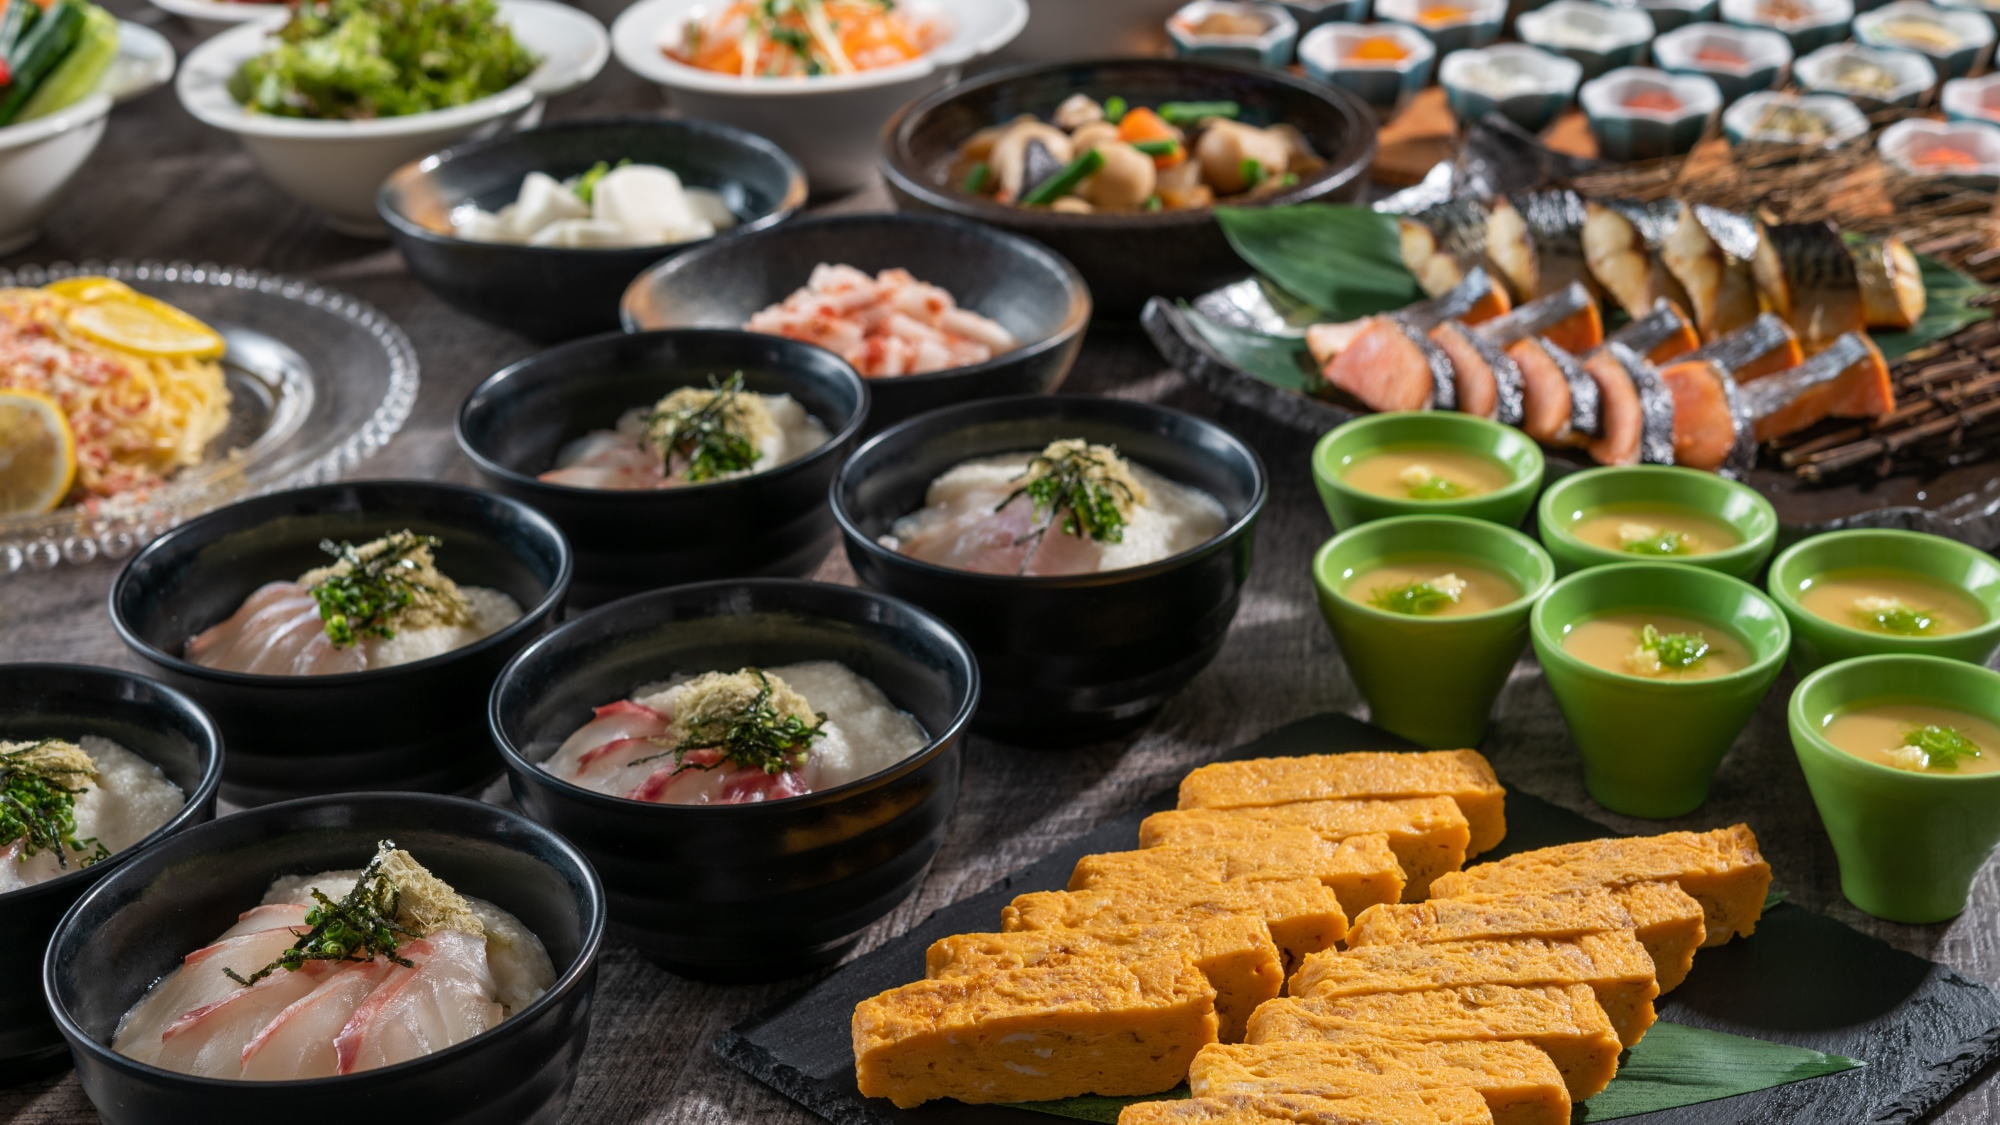 [Sarapan] Prasmanan Jepang, Barat, dan Cina dengan segalanya mulai dari masakan lokal hingga item menu standar!